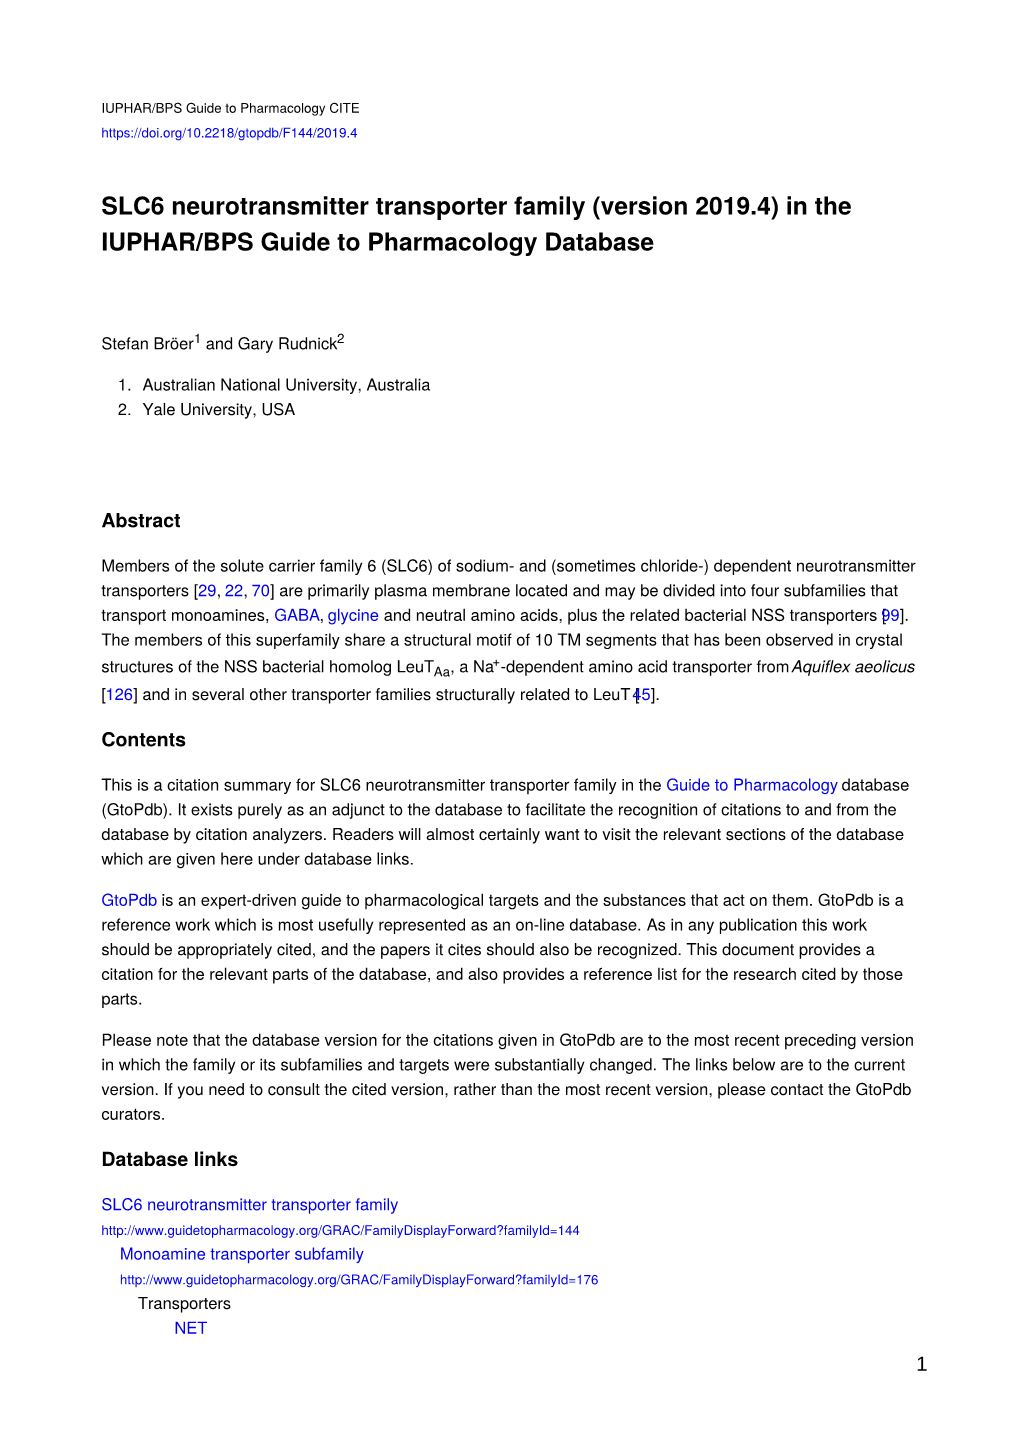 SLC6 Neurotransmitter Transporter Family (Version 2019.4) in the IUPHAR/BPS Guide to Pharmacology Database